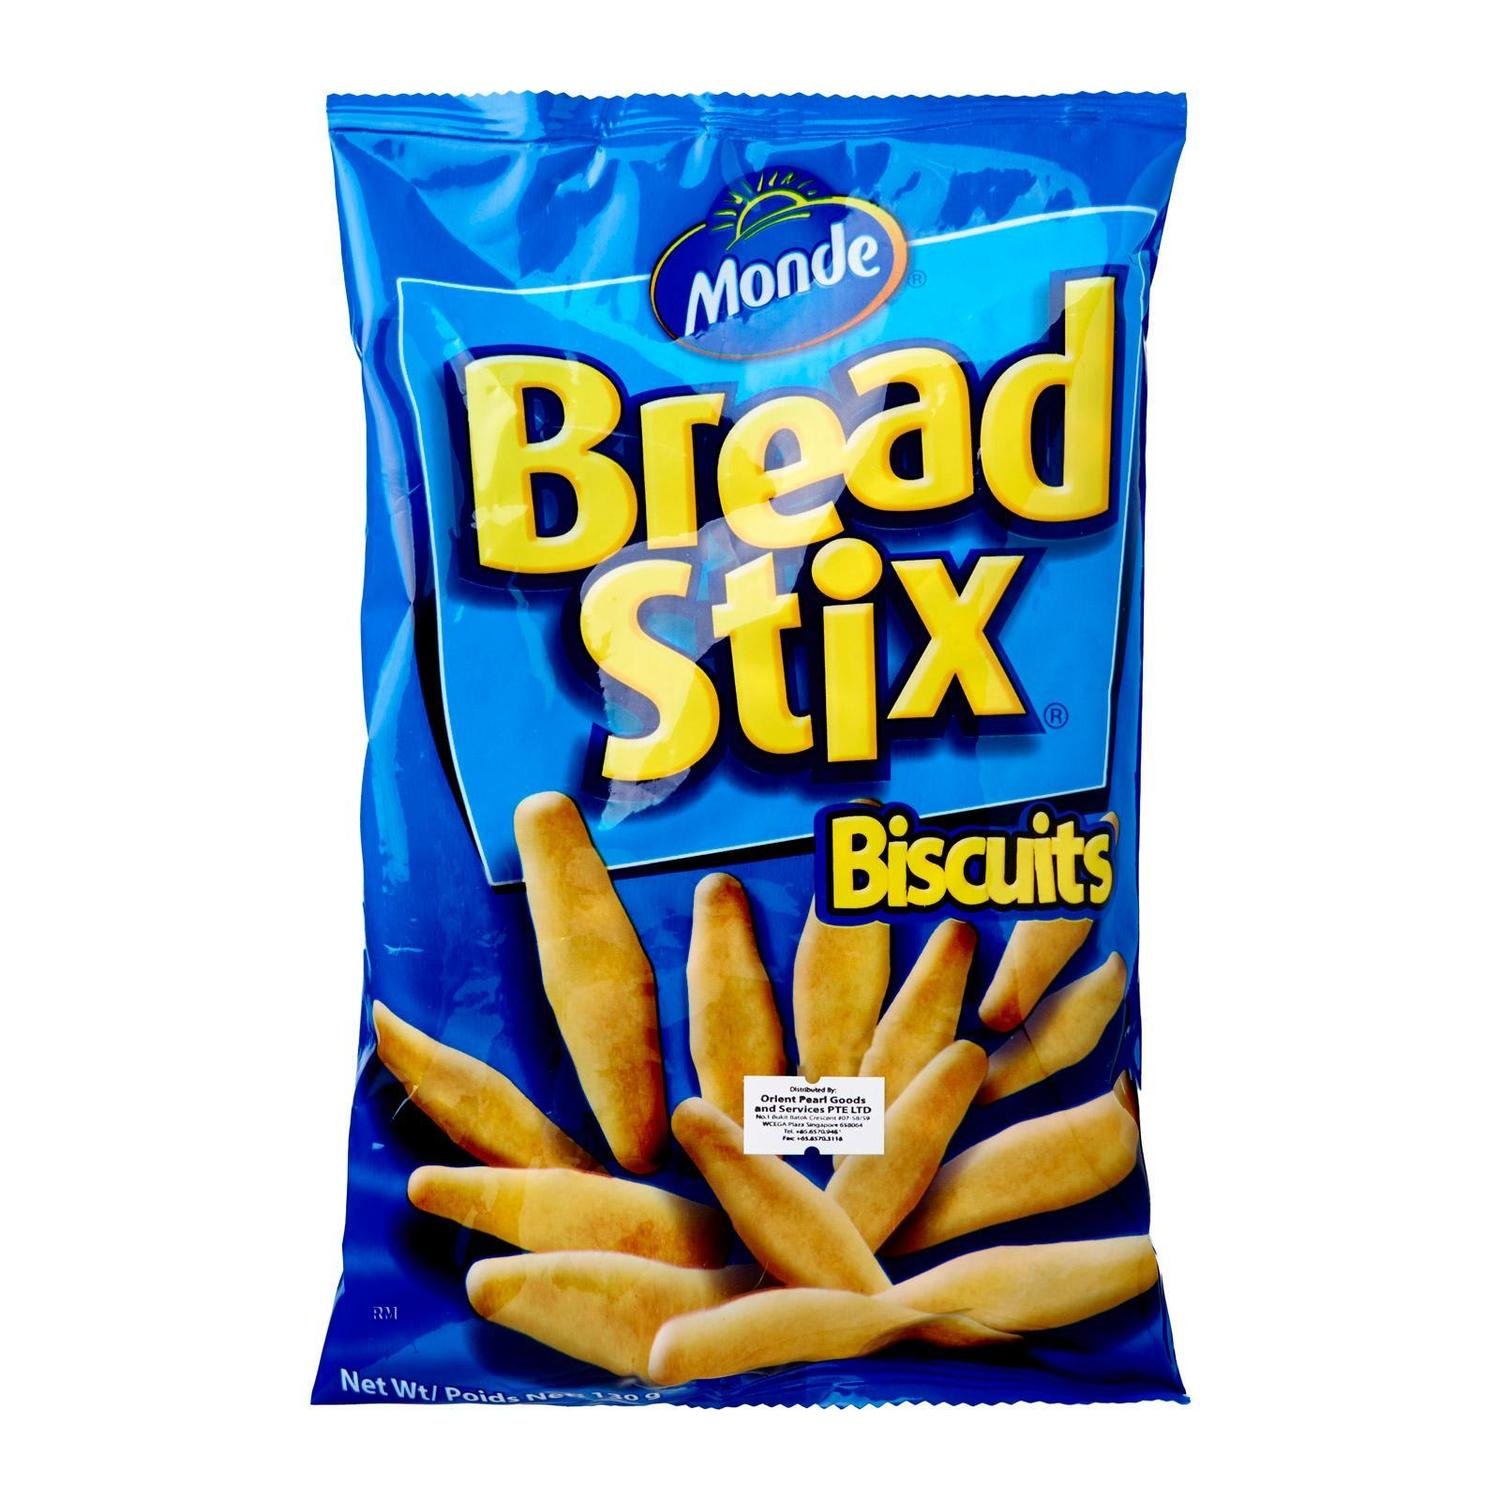 Monde Bread Stix Biscuits 130g